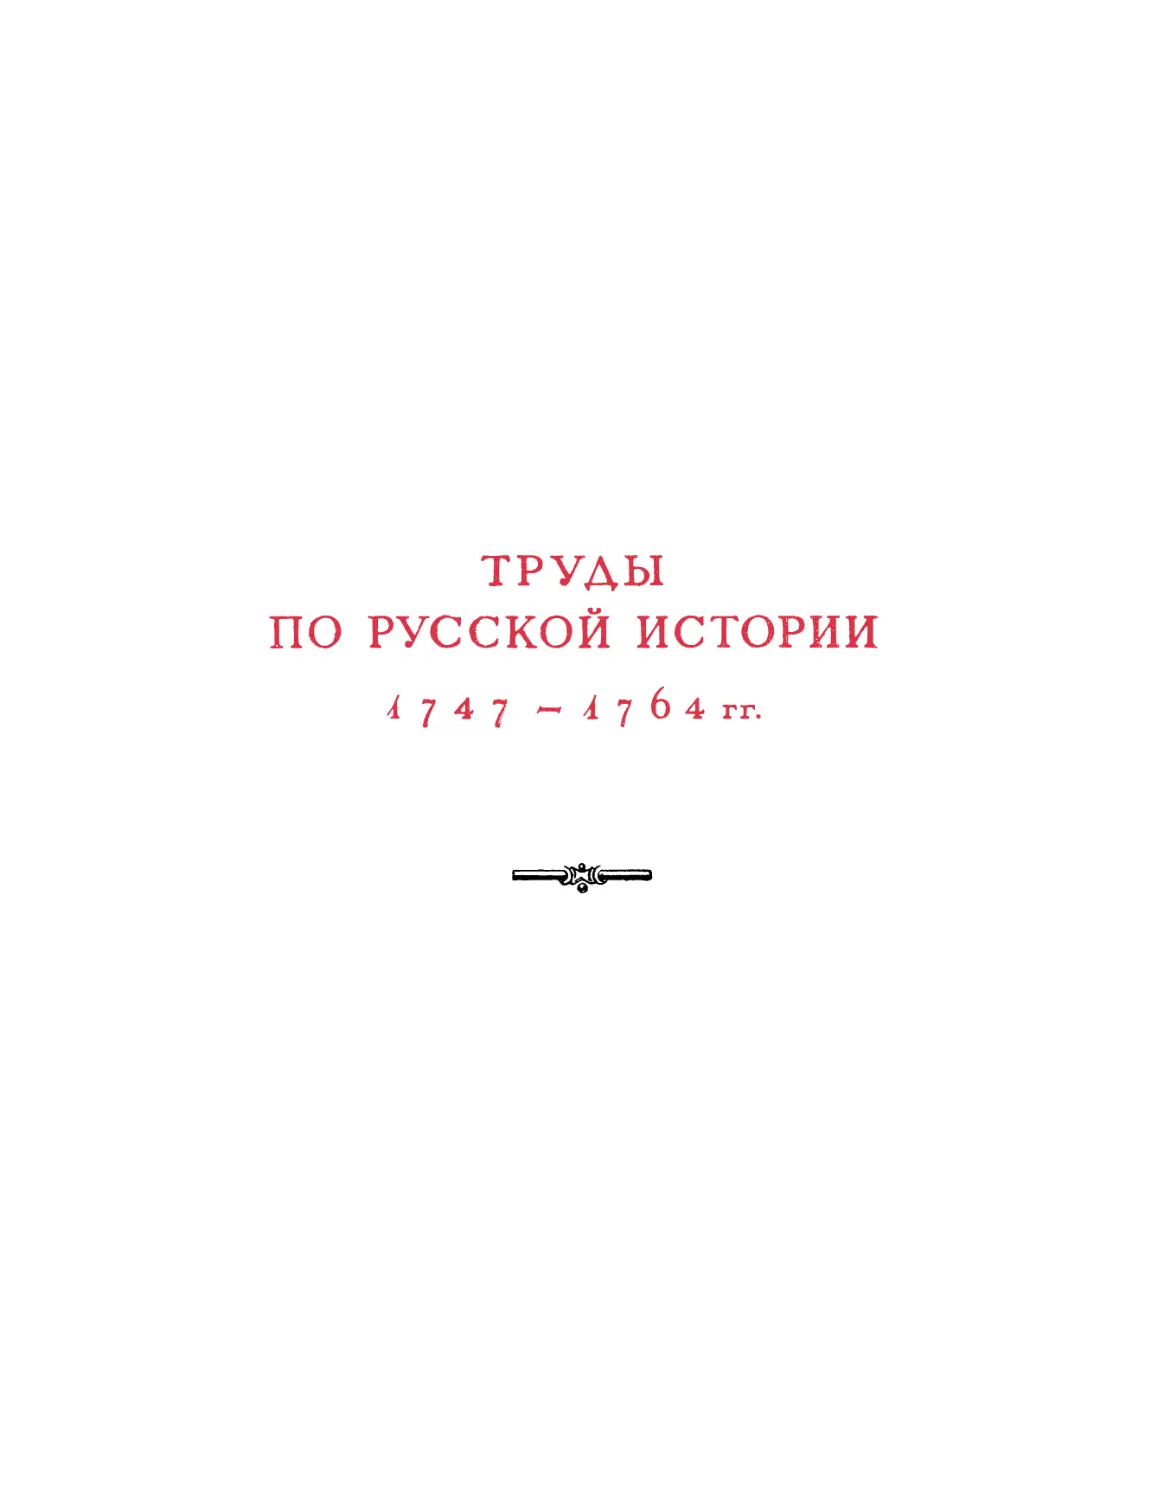 Труды по русской истории 1747—1764 гг.